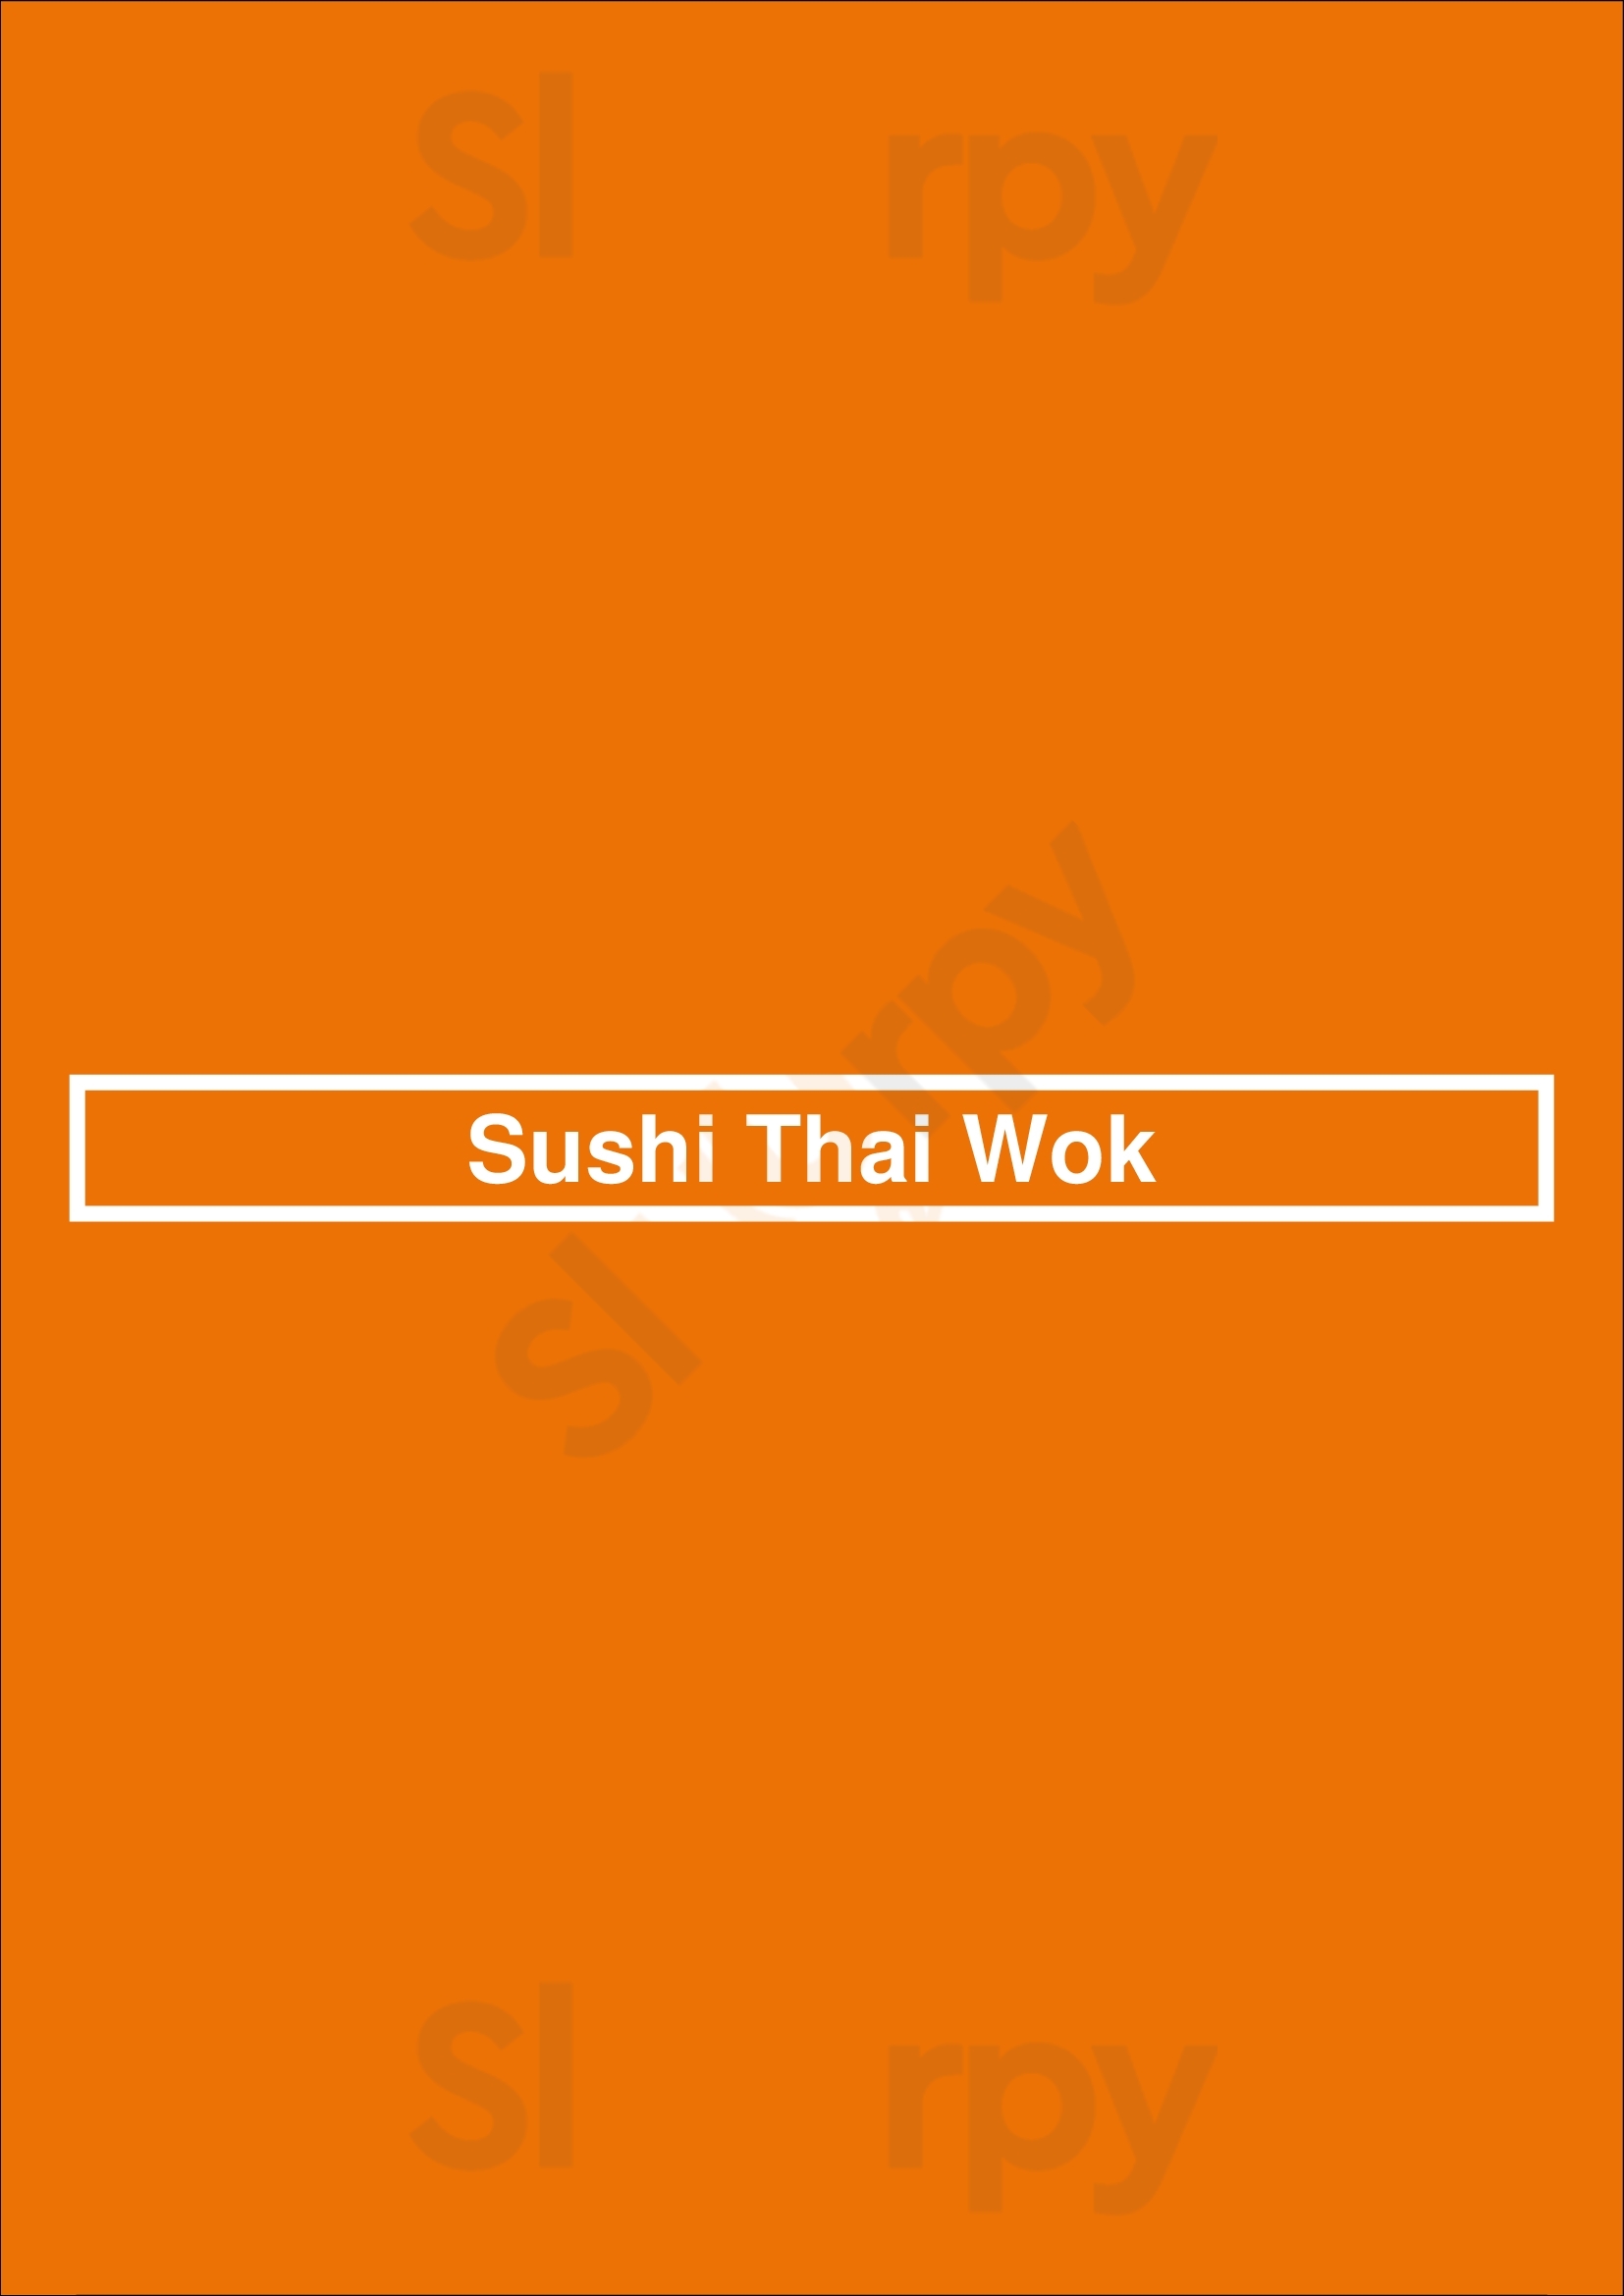 Sushi Thai Wok Deuil-la-Barre Menu - 1